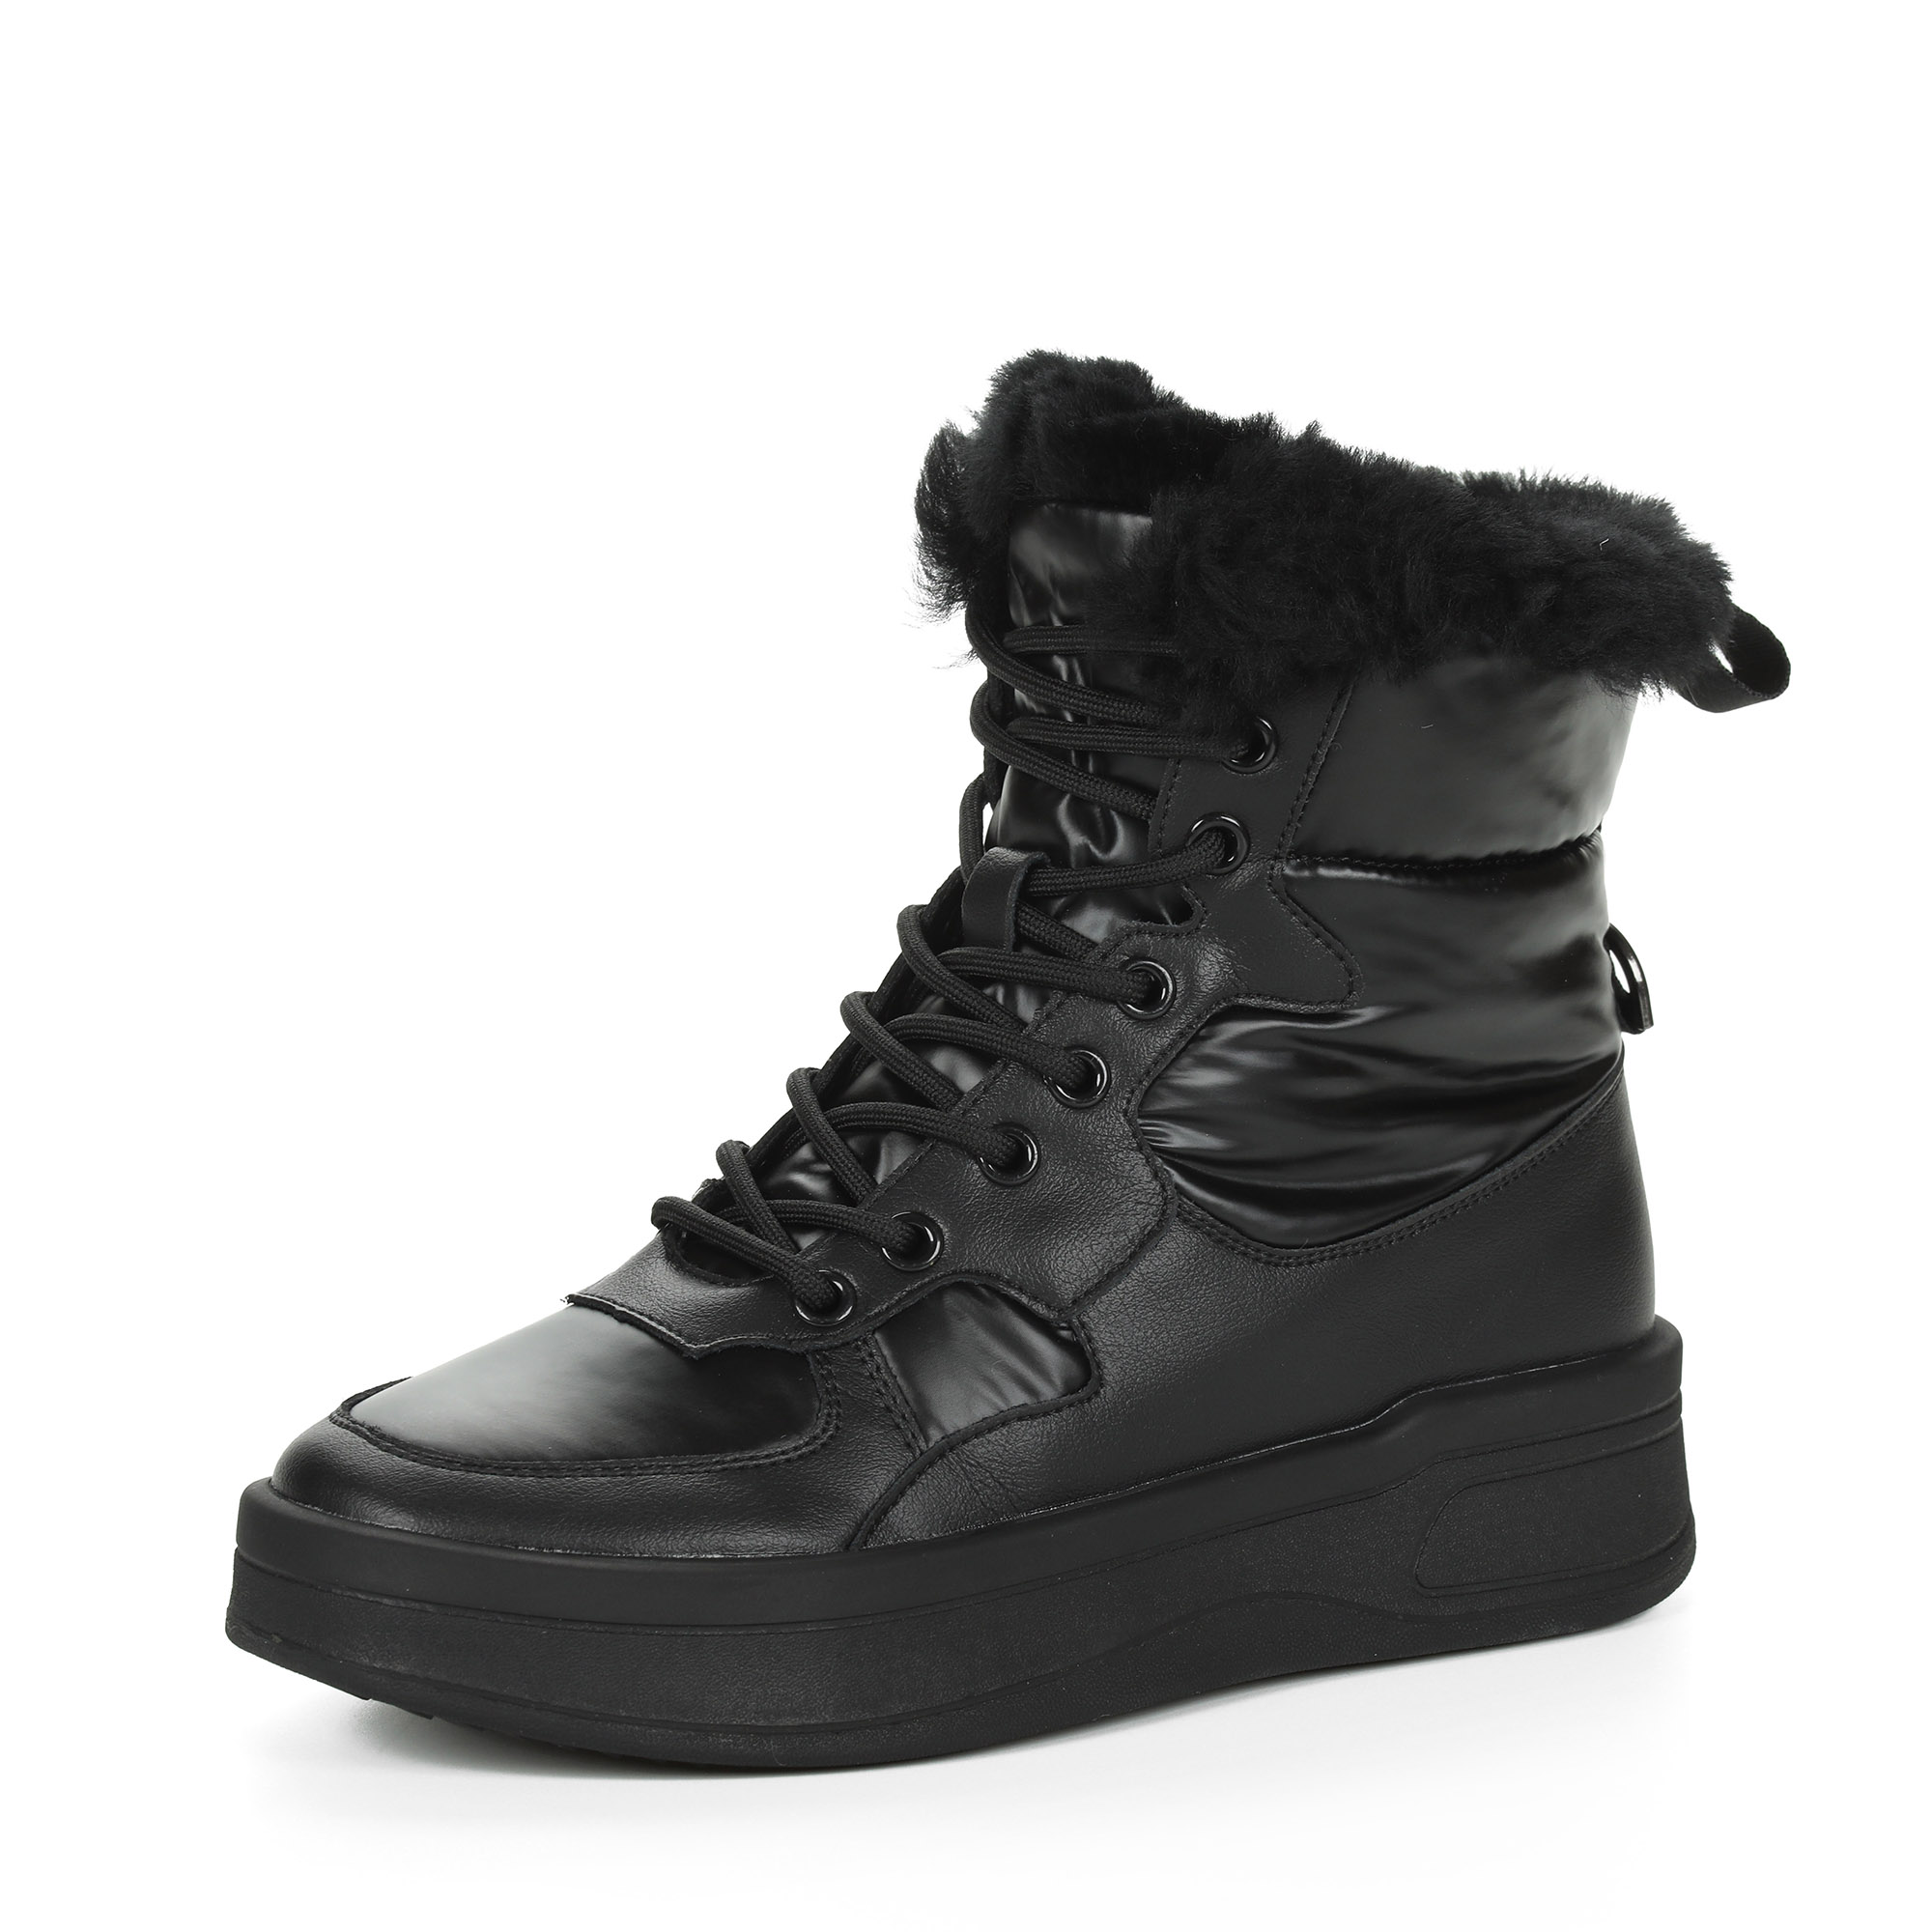 Черные высокие кроссовки из комбинированных материалов смеховой опушкой на подкладке из натуральной шерсти на утолщенной платформе Respect, цвет черный - фото 3